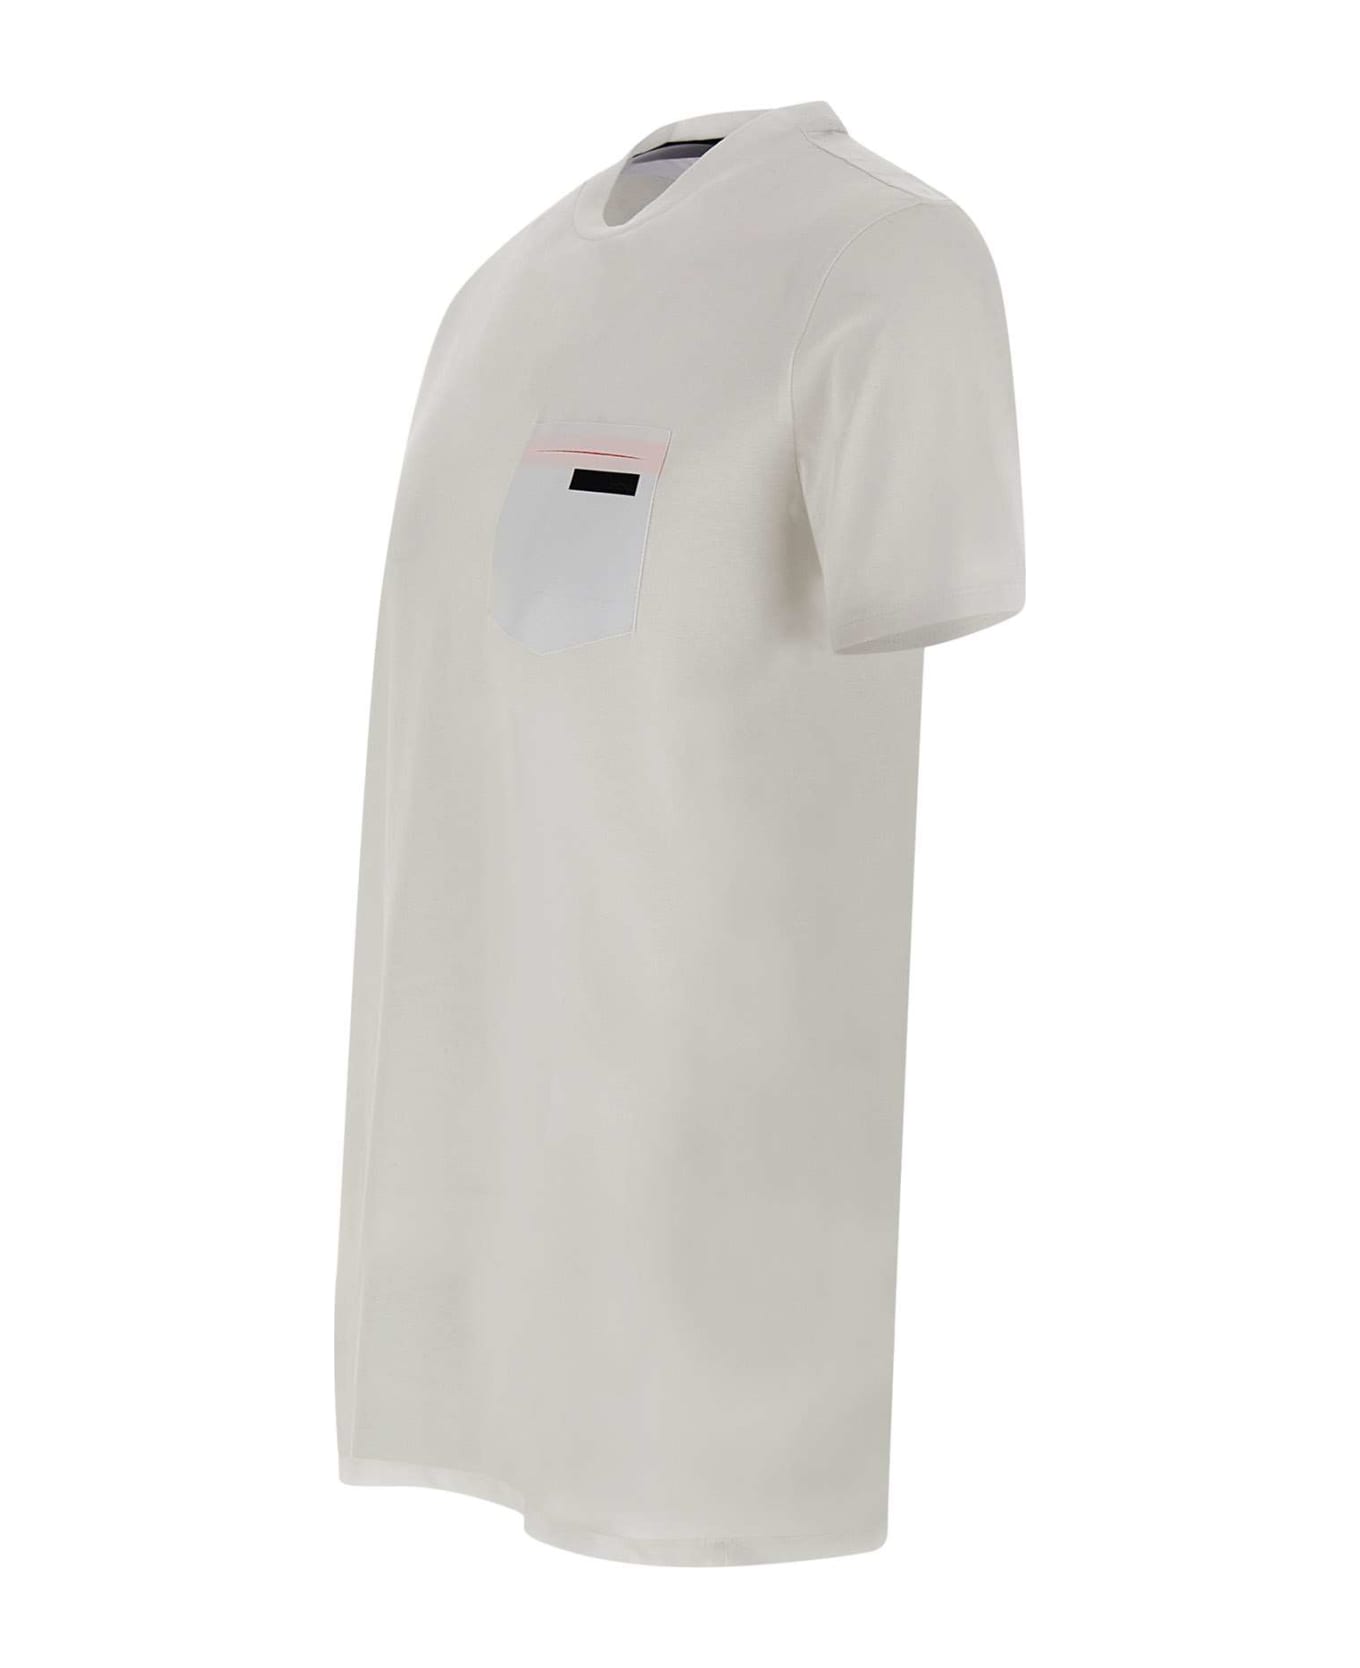 RRD - Roberto Ricci Design Revo White T-shirt - White